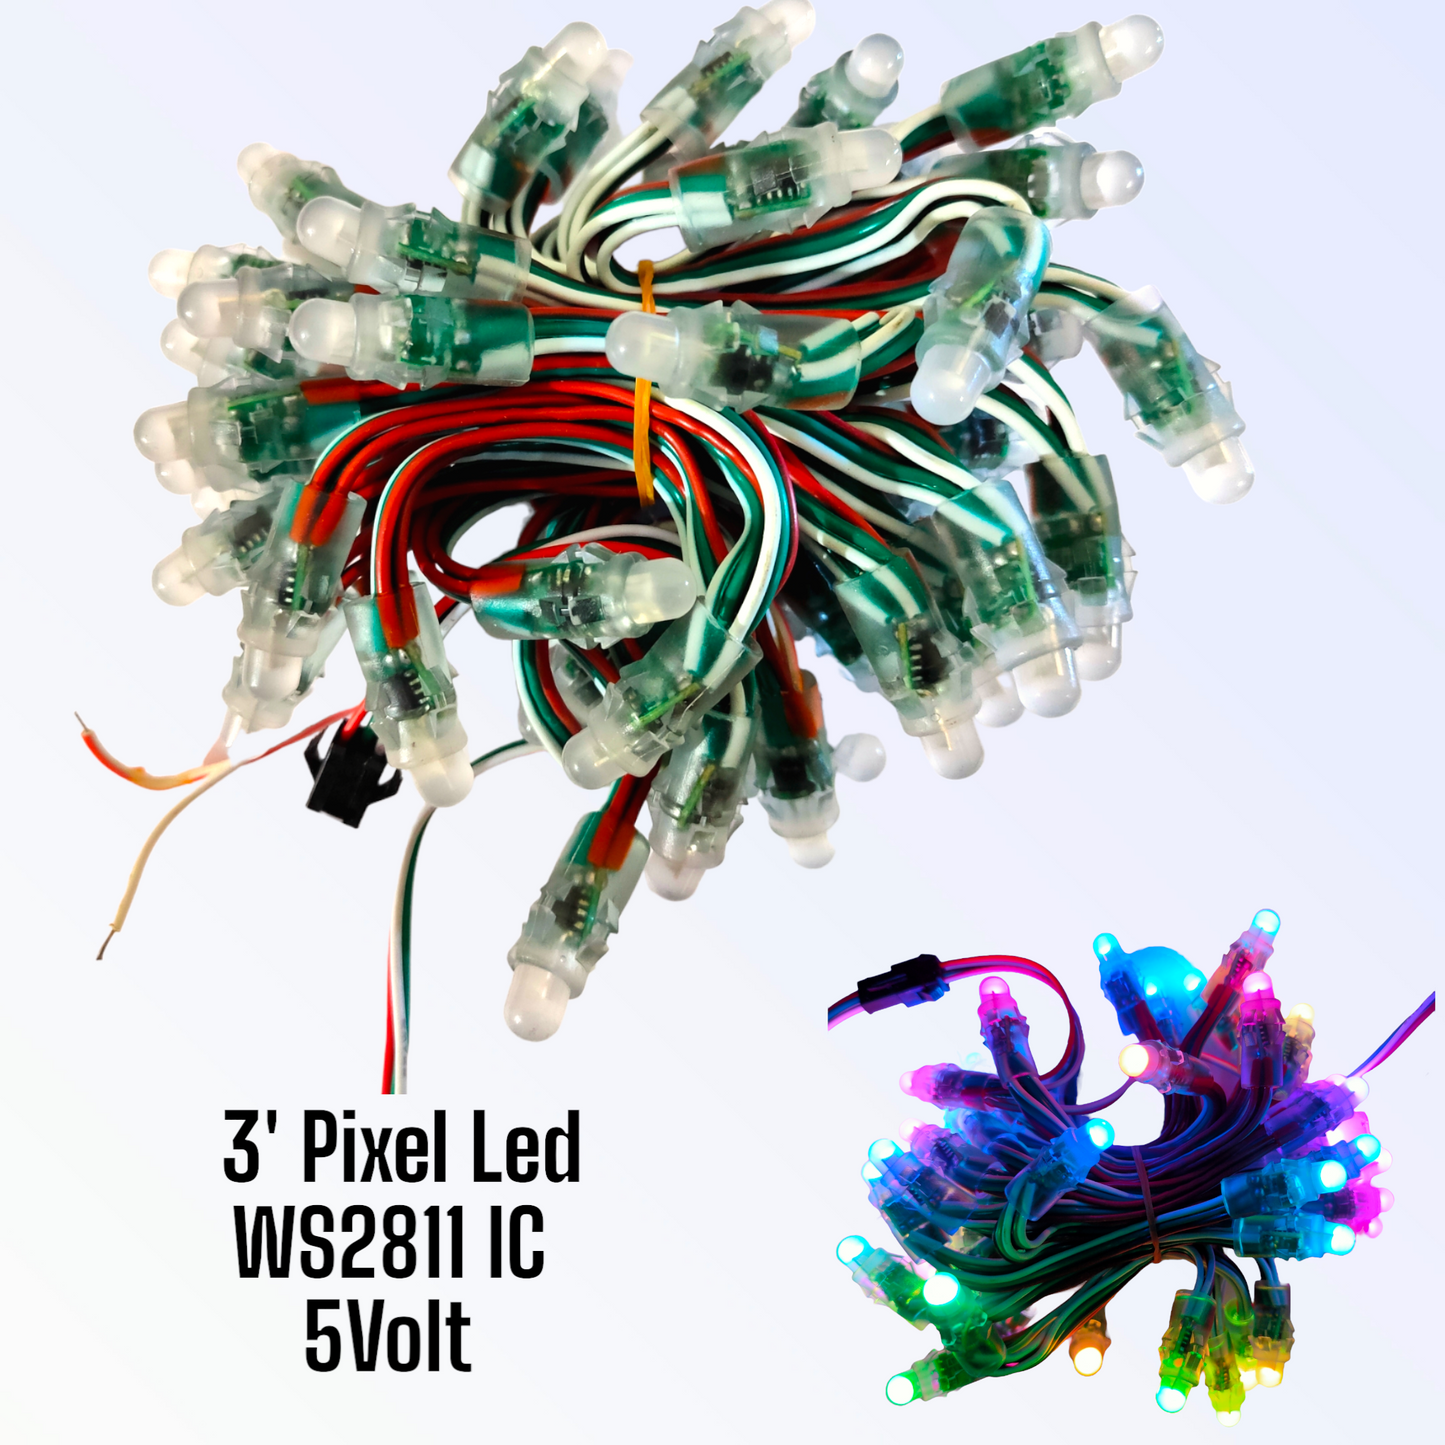 Pixel Led PVC Wire 3'